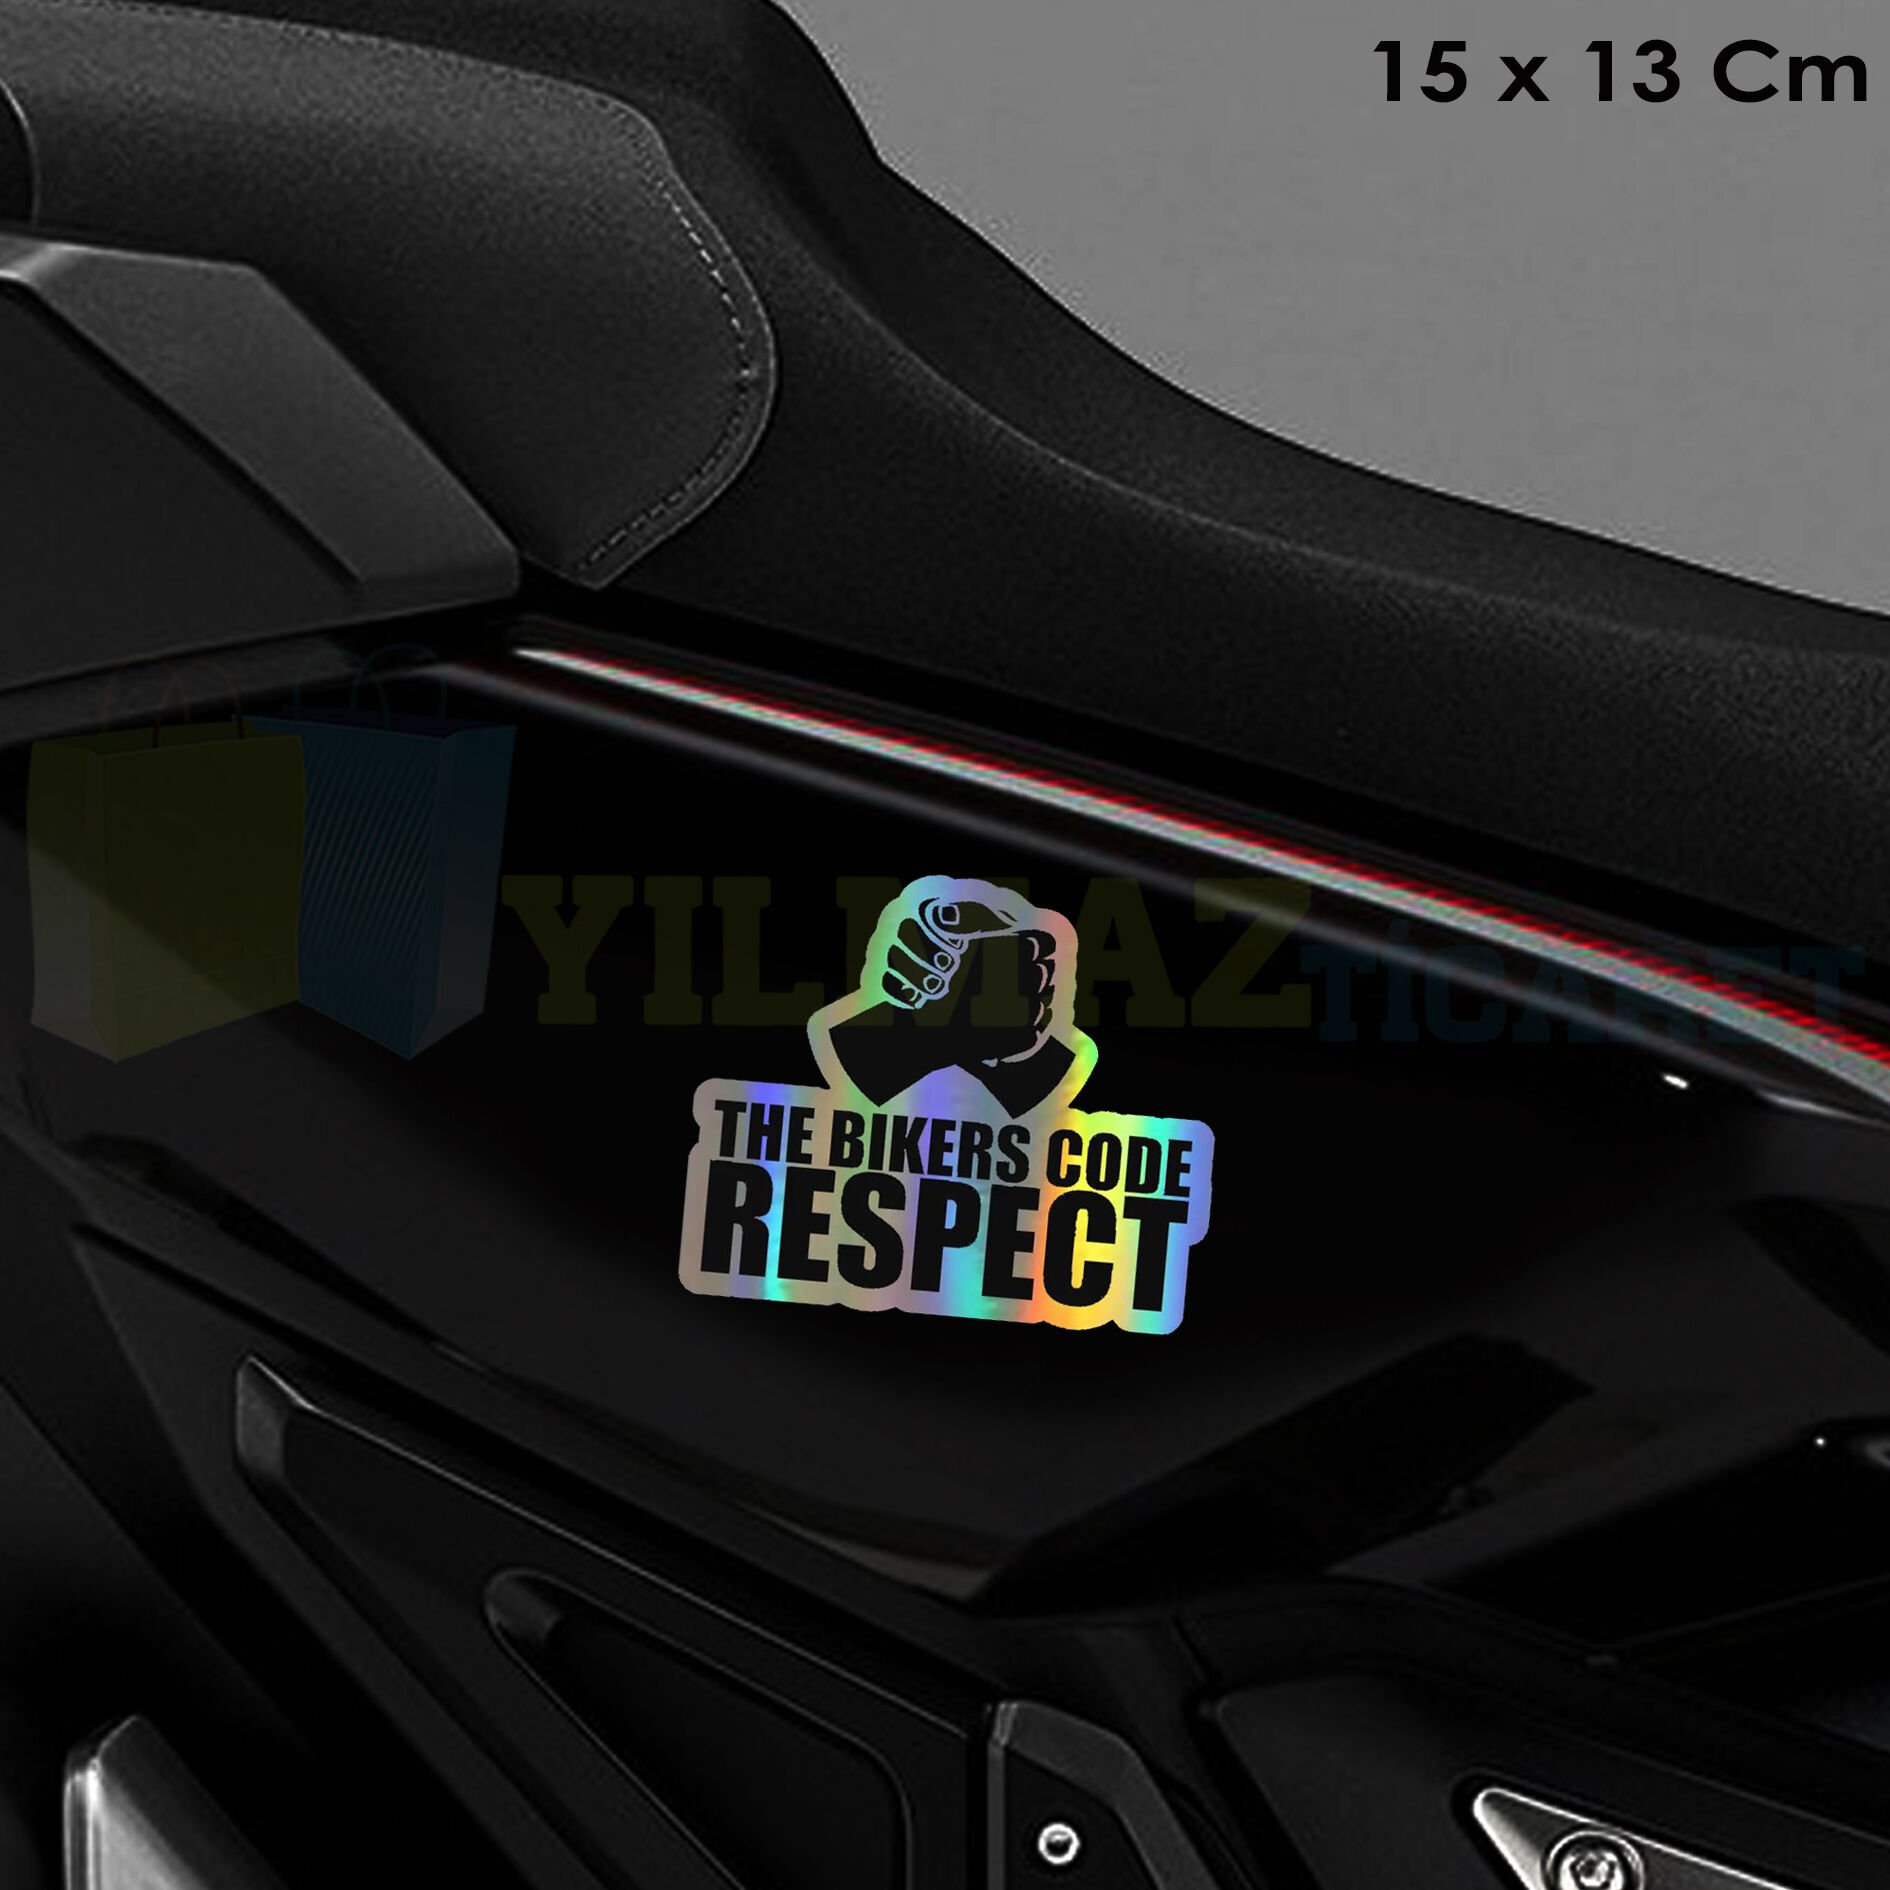 Motosiklet Saygı Hologram Motosiklet Sticker Oto Araba Etiket Renkli Yapıştırma Çıkartma 15 x 13 Cm